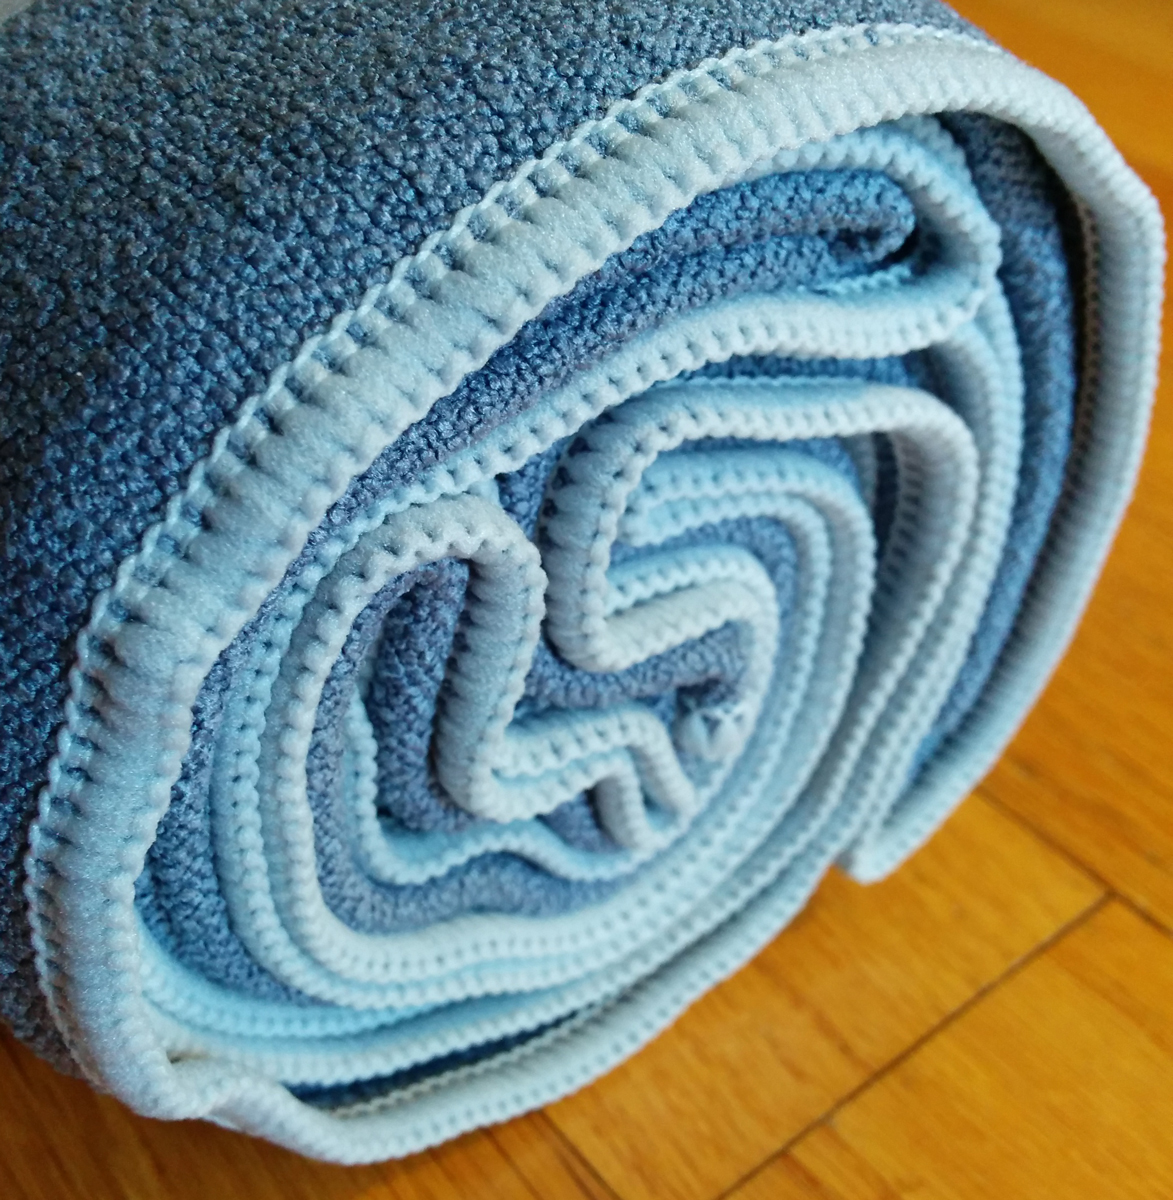 YogaRat towel review - 72 x 24 microfiber towel 